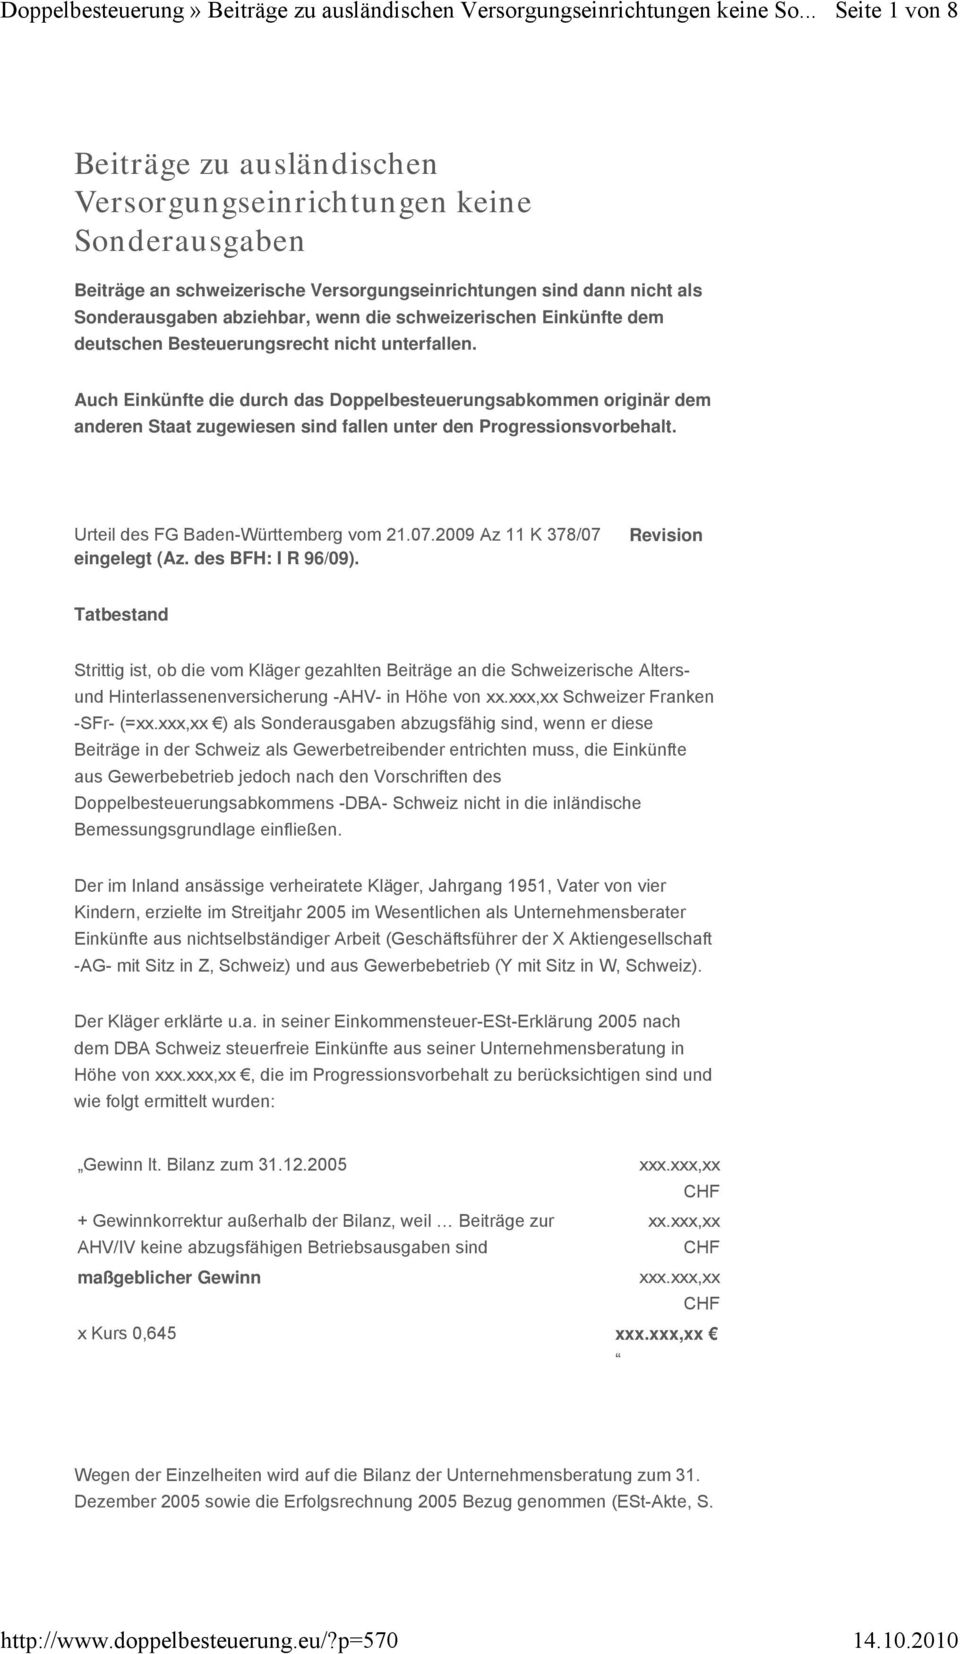 Auch Einkünfte die durch das Doppelbesteuerungsabkommen originär dem anderen Staat zugewiesen sind fallen unter den Progressionsvorbehalt. Urteil des FG Baden-Württemberg vom 21.07.